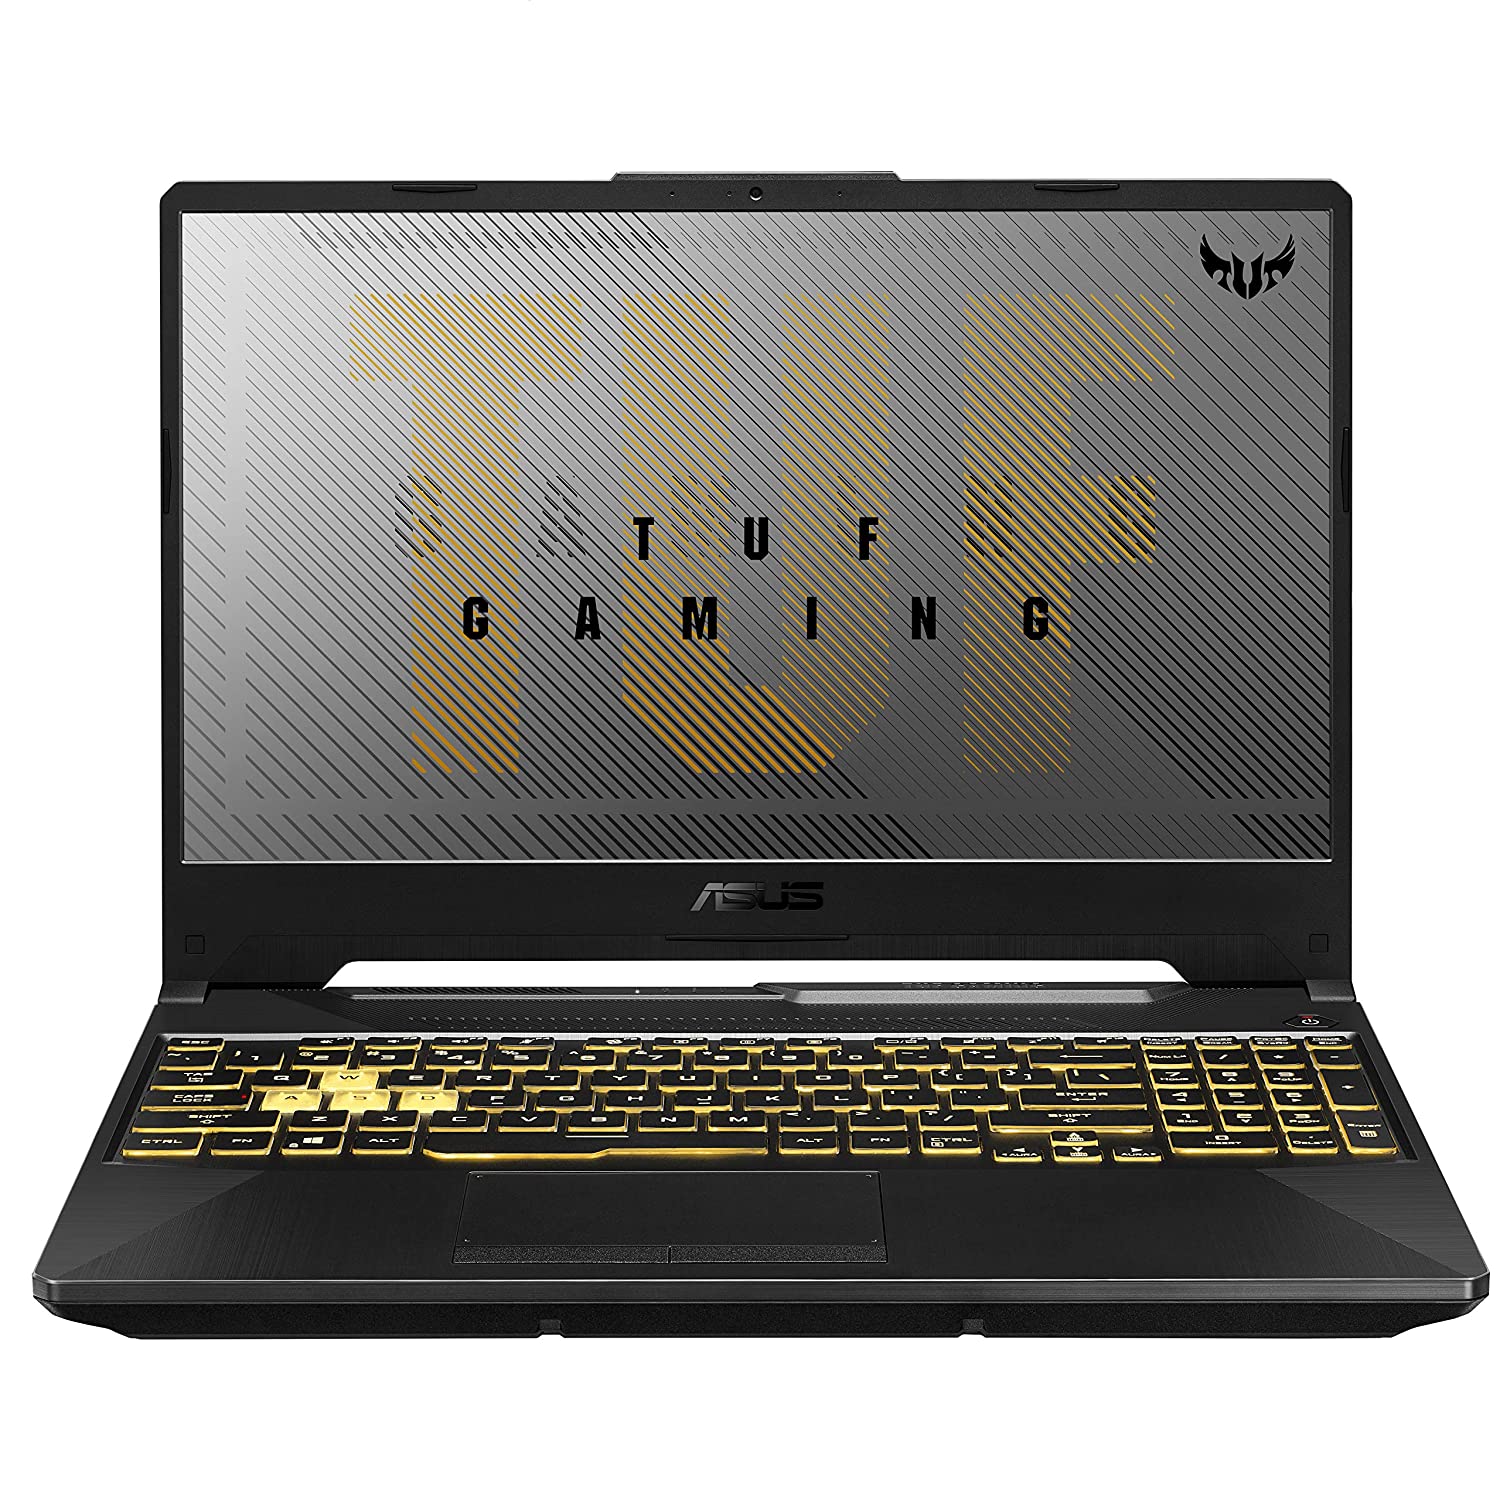 ASUS TUF Gaming F15 Intel Core i7 10th Gen Gaming Laptop